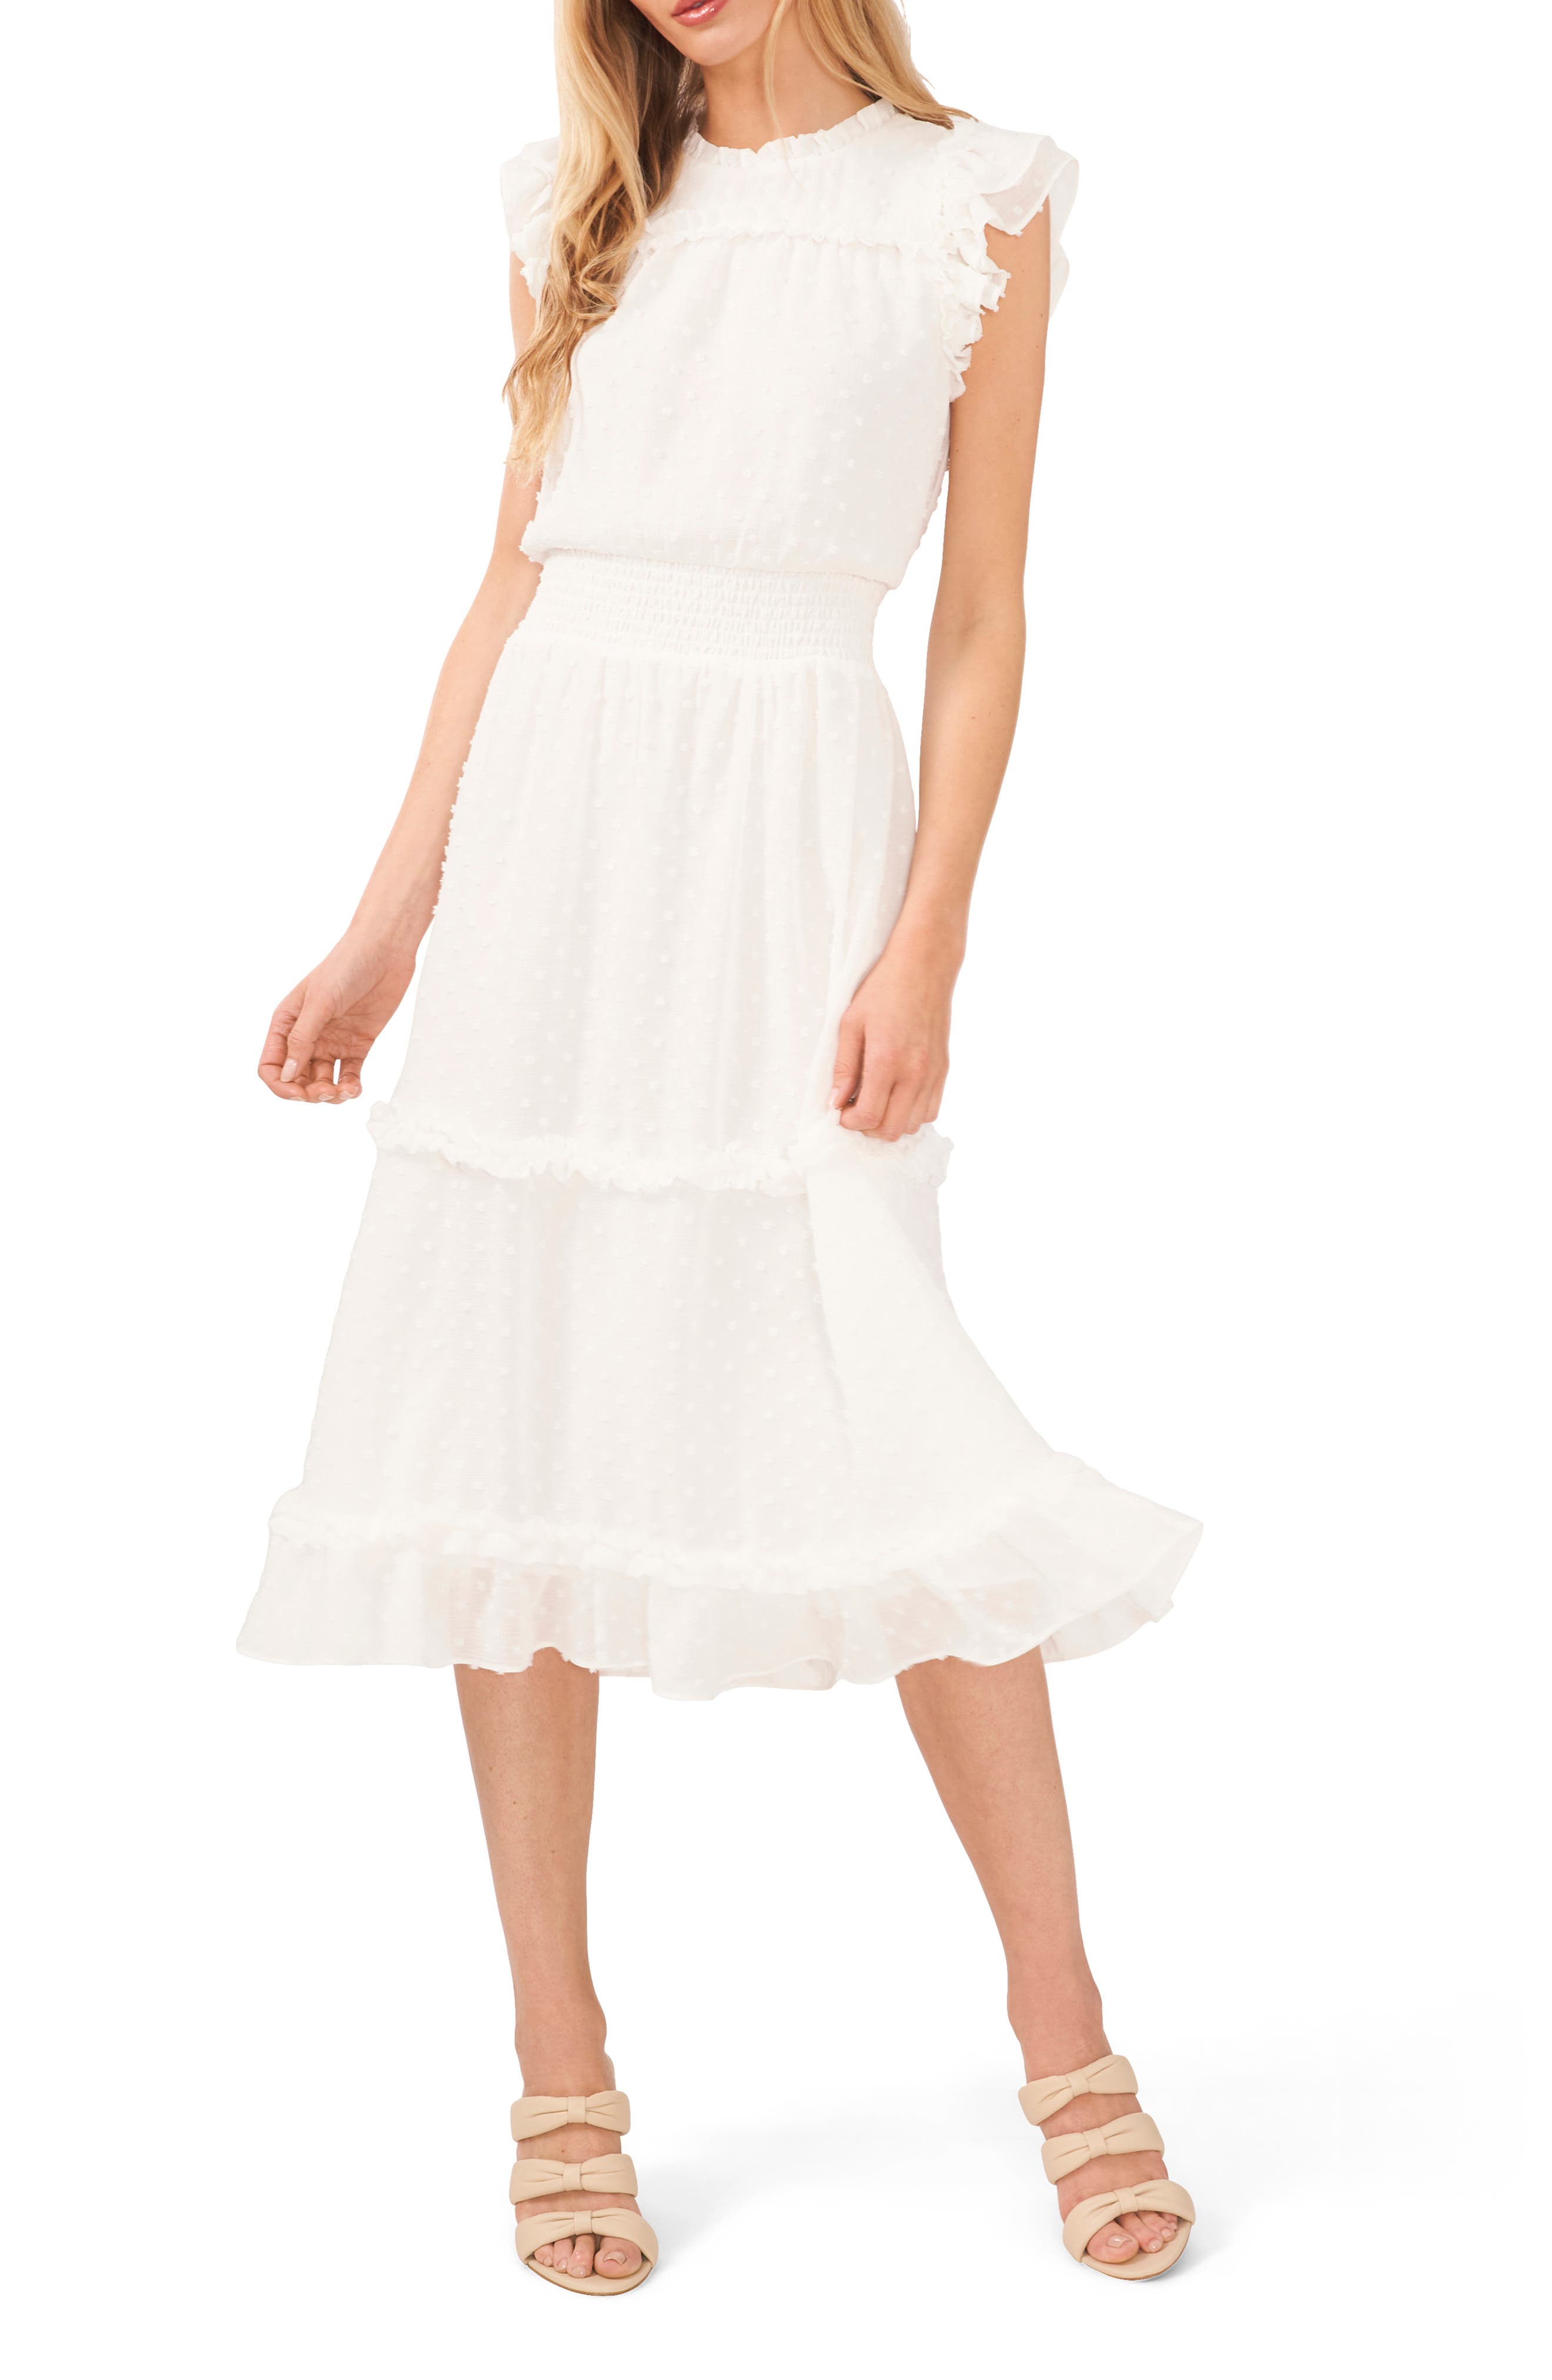 women’s white dresses